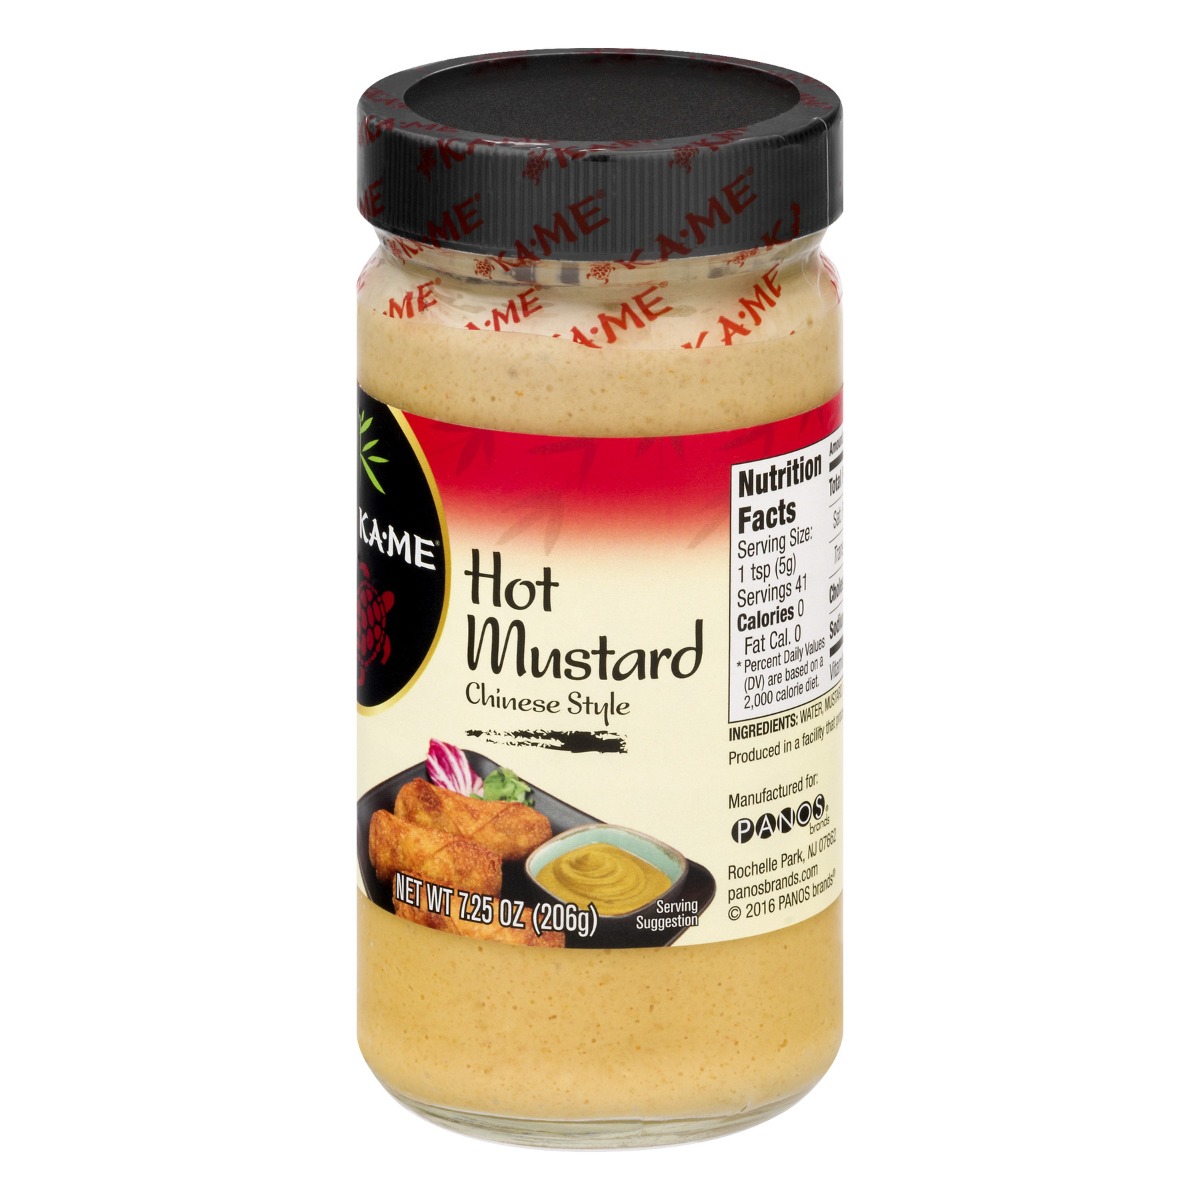 KA ME: Mustard Hot Chinese Style, 7.25 oz - 0070844005301